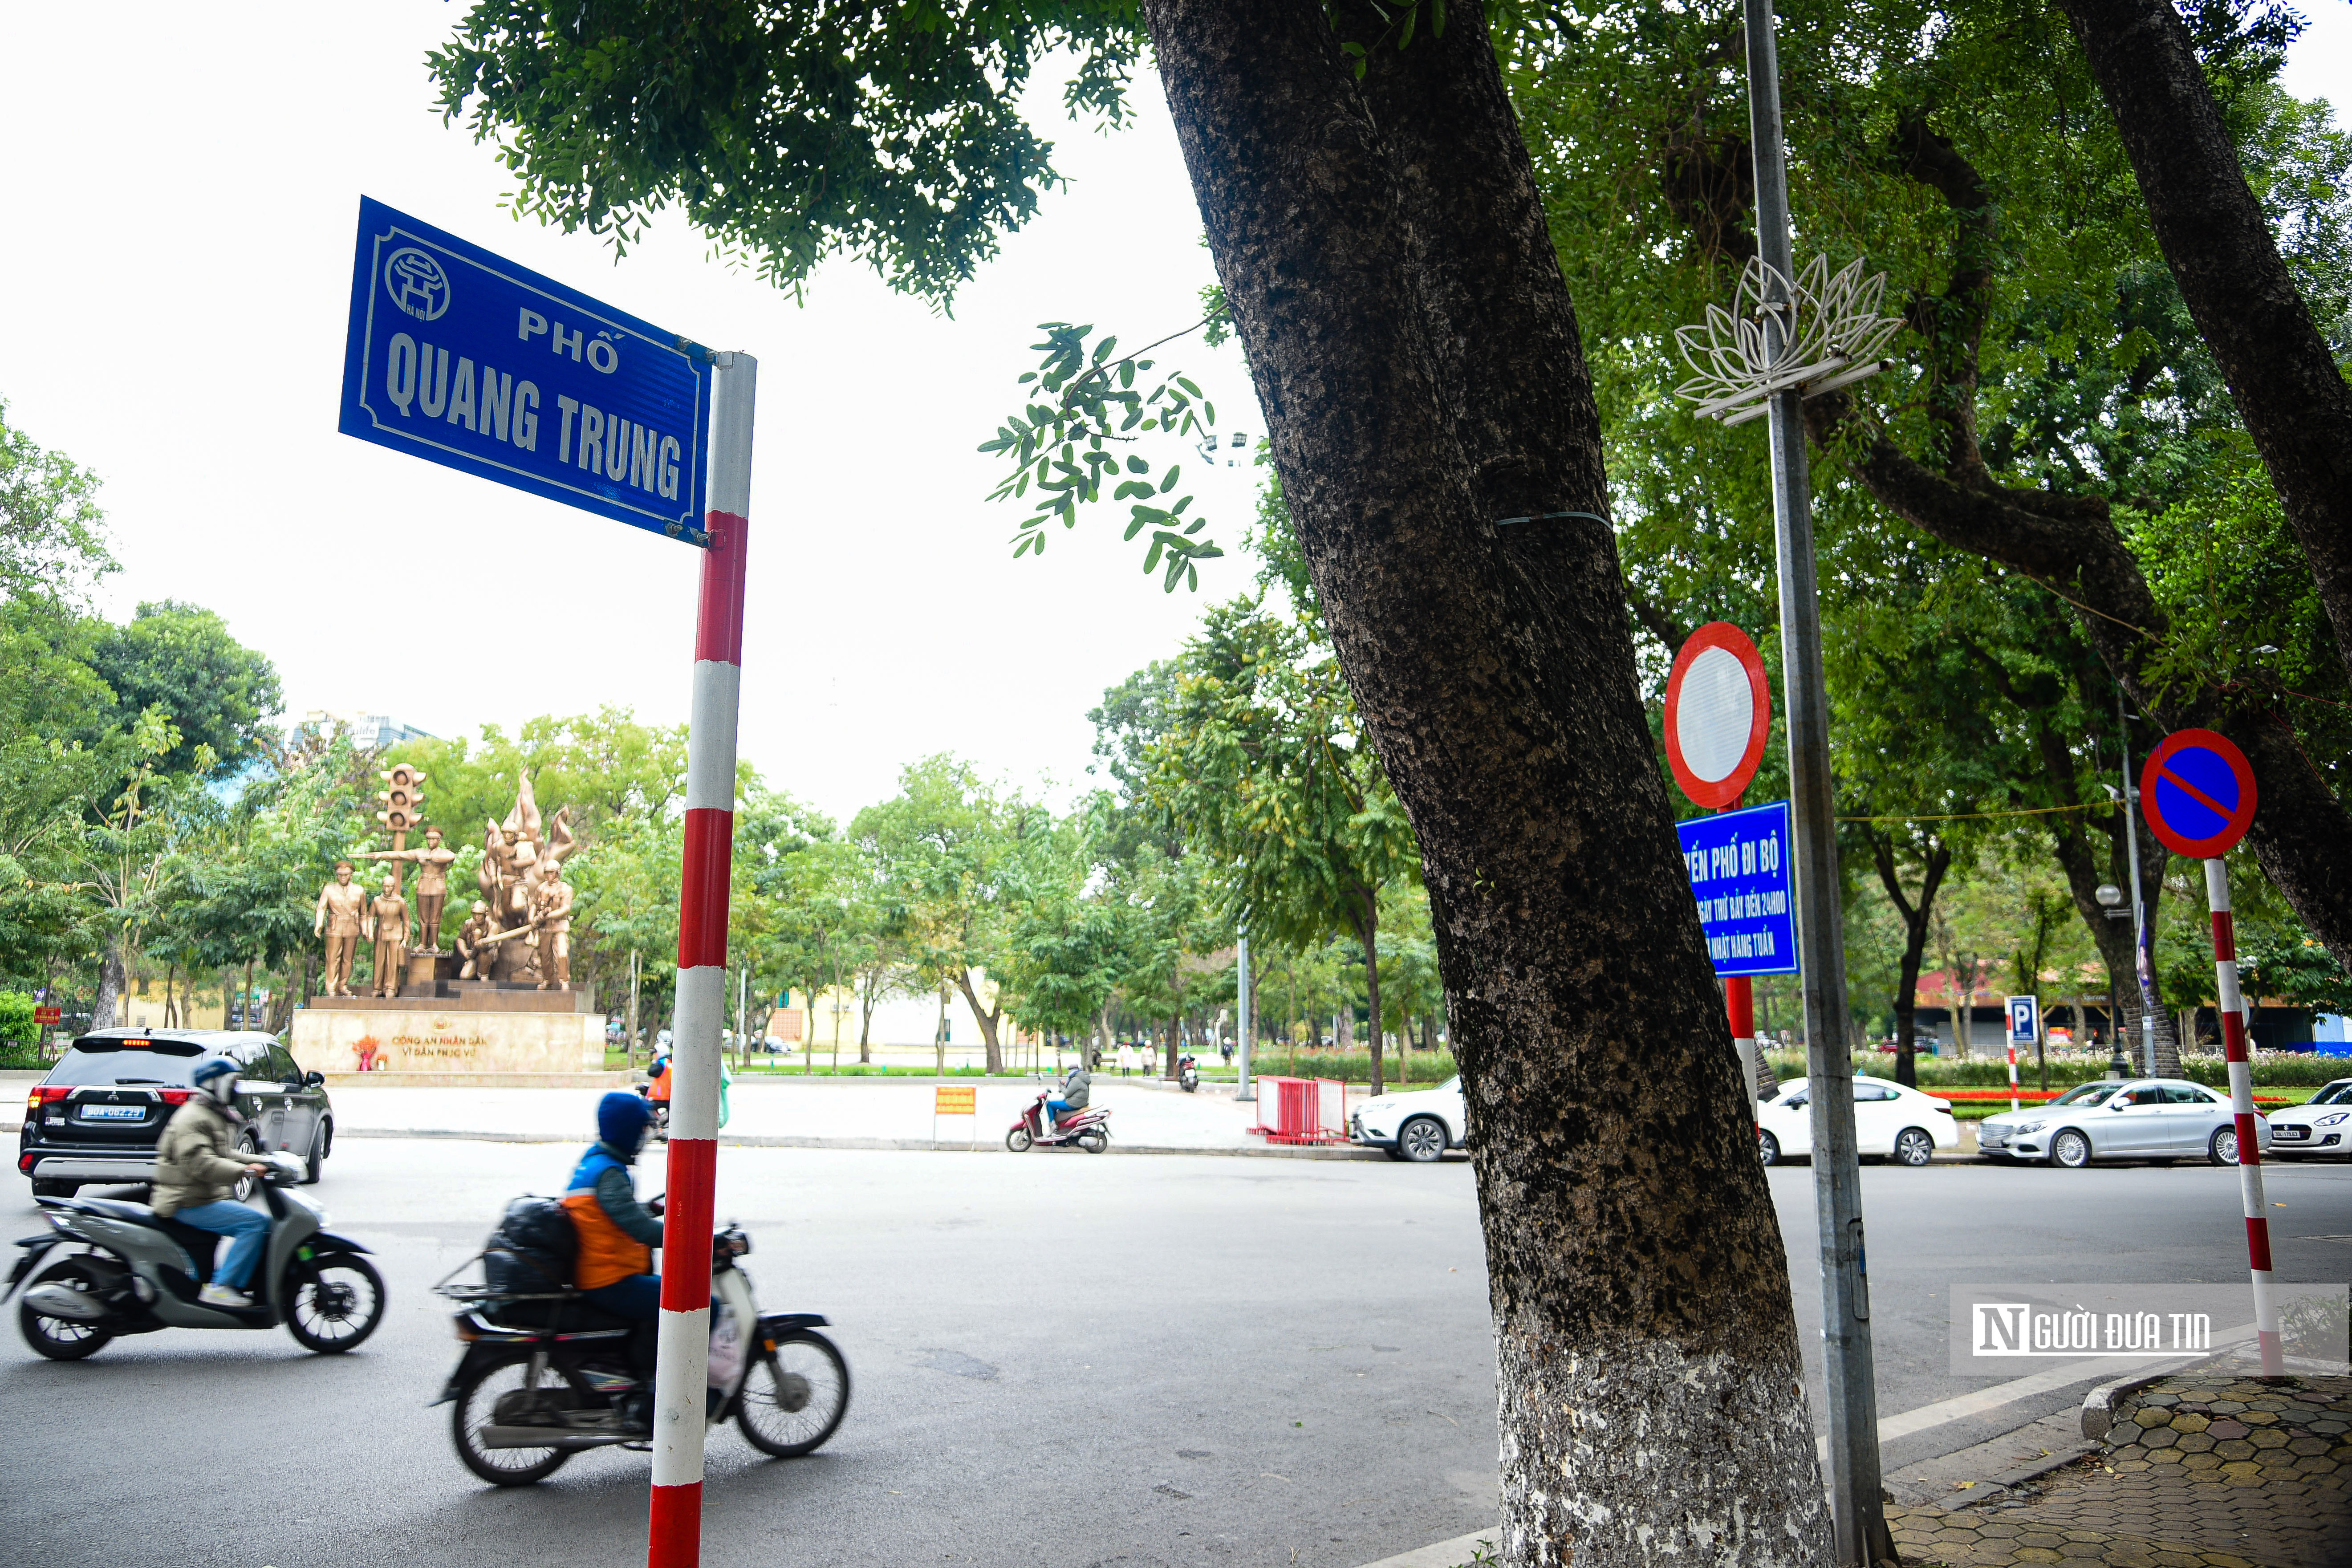 Xã hội - Hiện trạng hồ Thiền Quang trước đề xuất làm 5 quảng trường xung quanh (Hình 15).